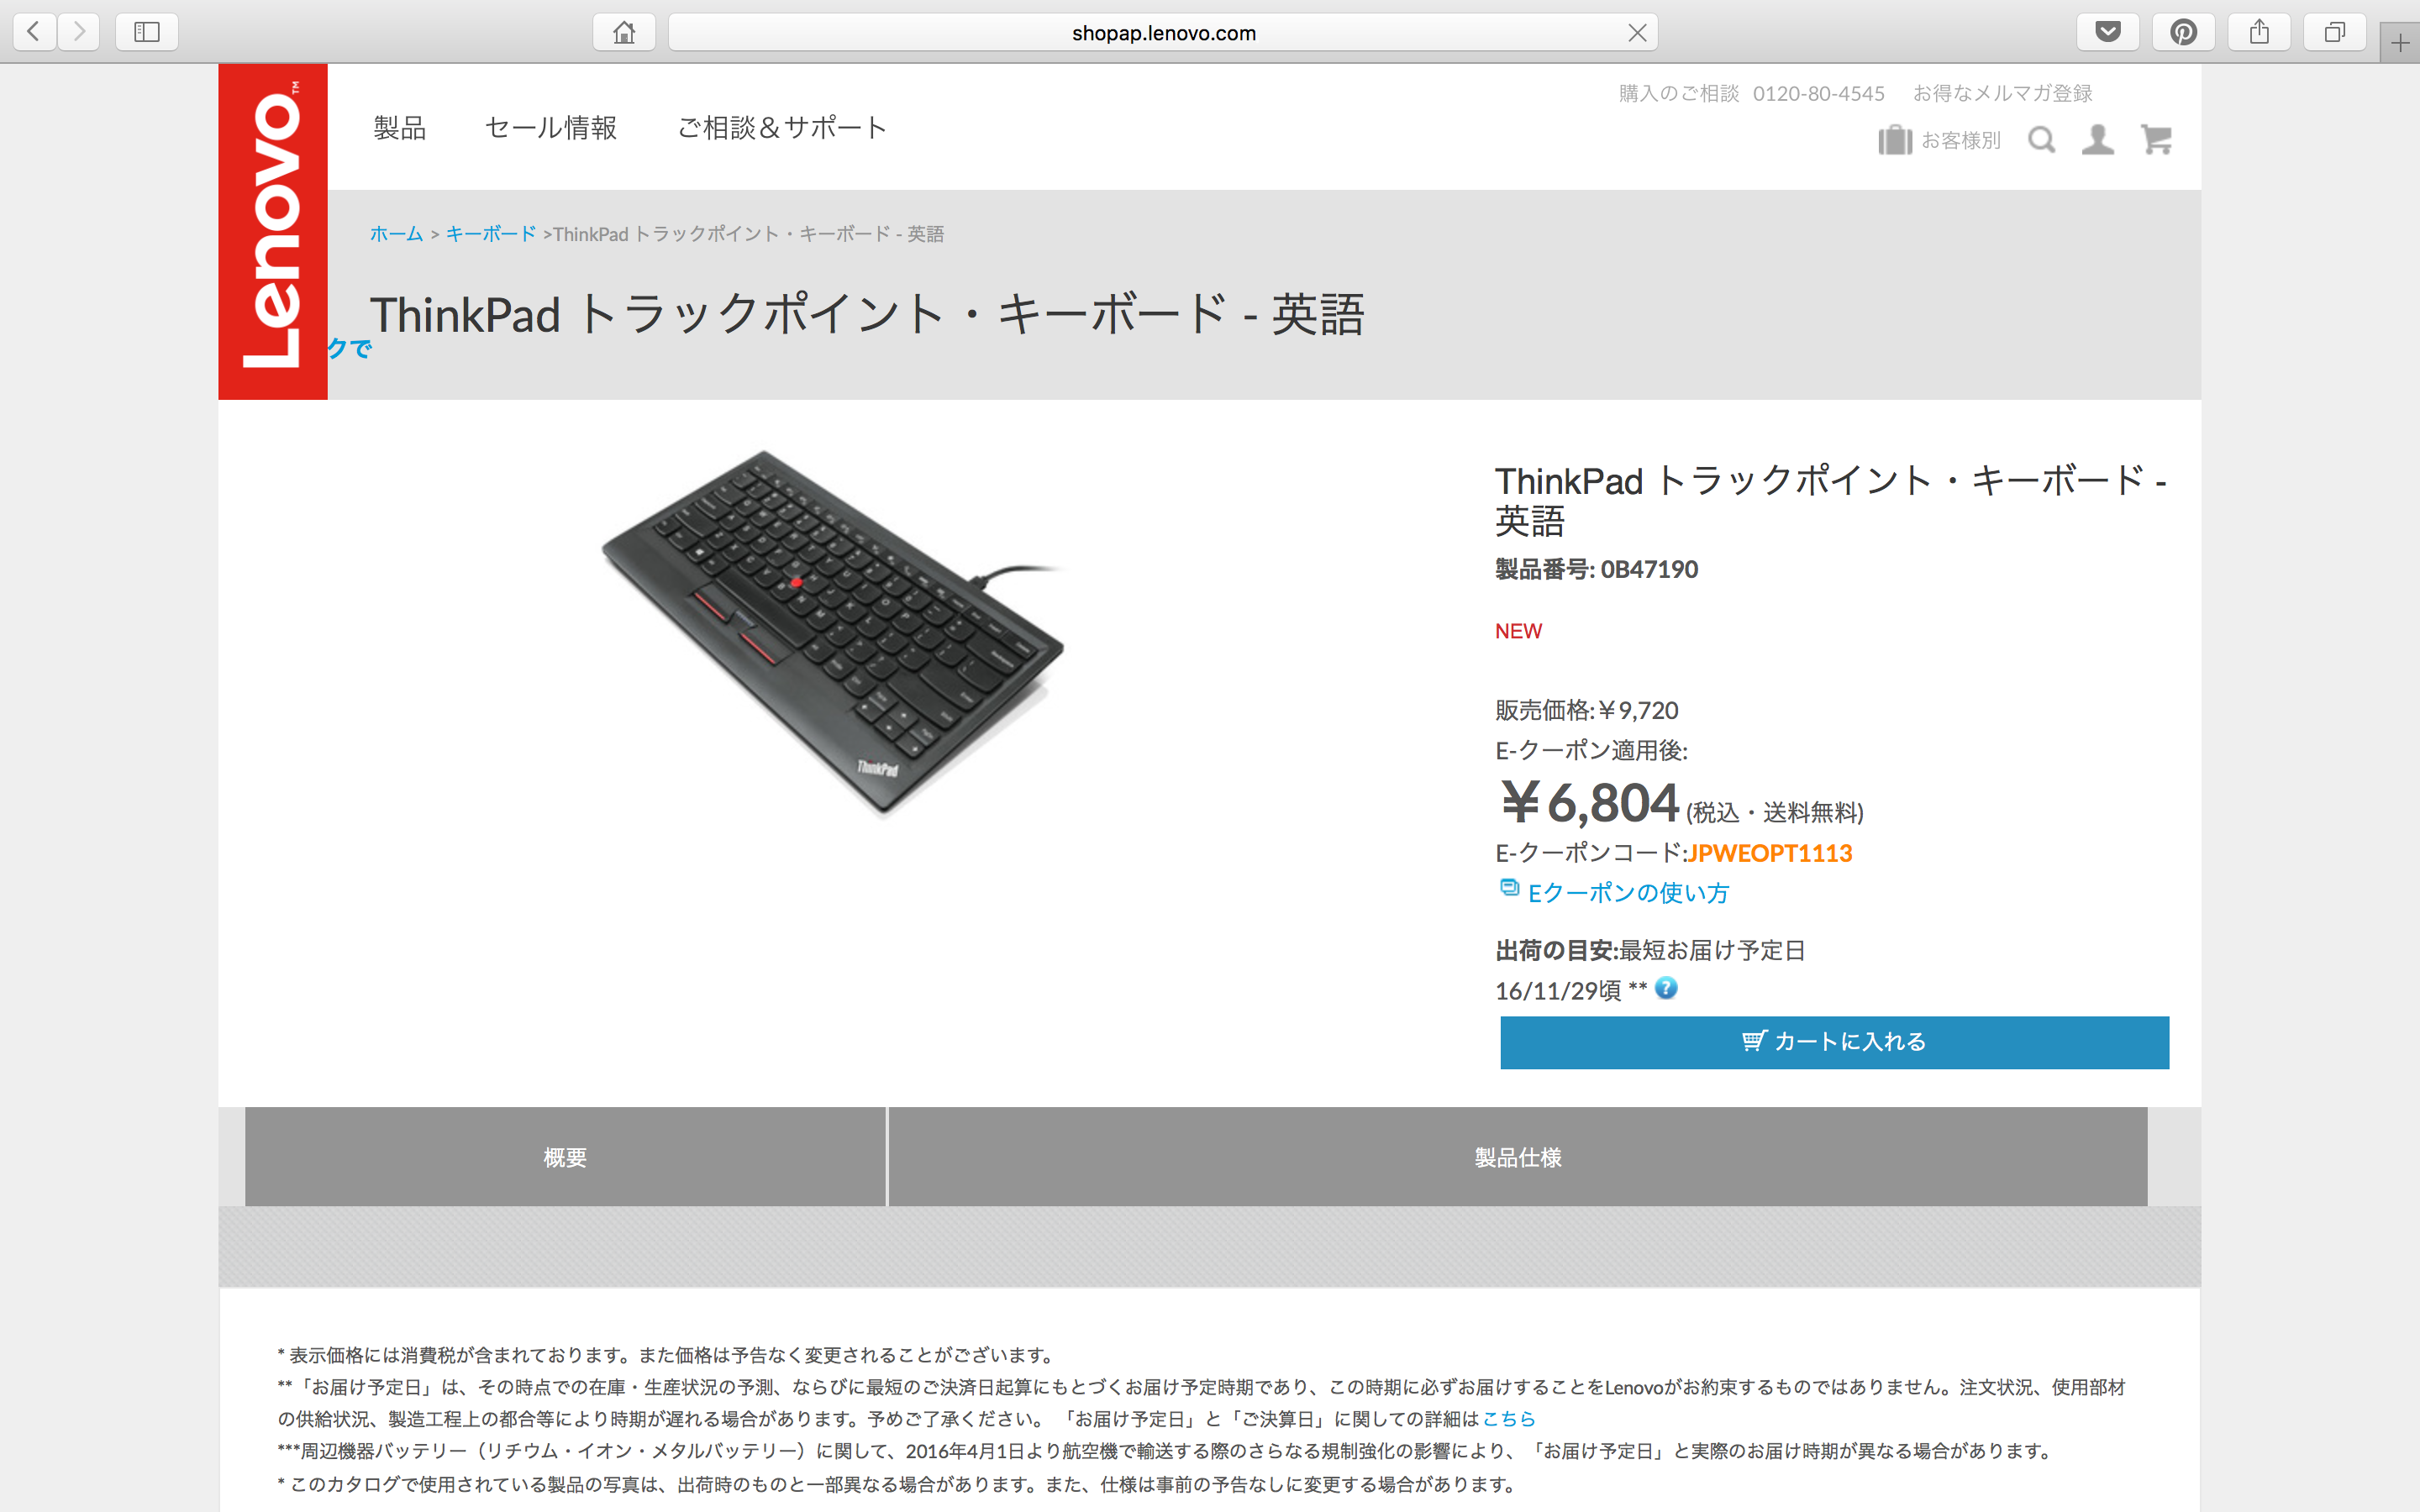 ThinkPad トラックポイント・キーボード - 英語